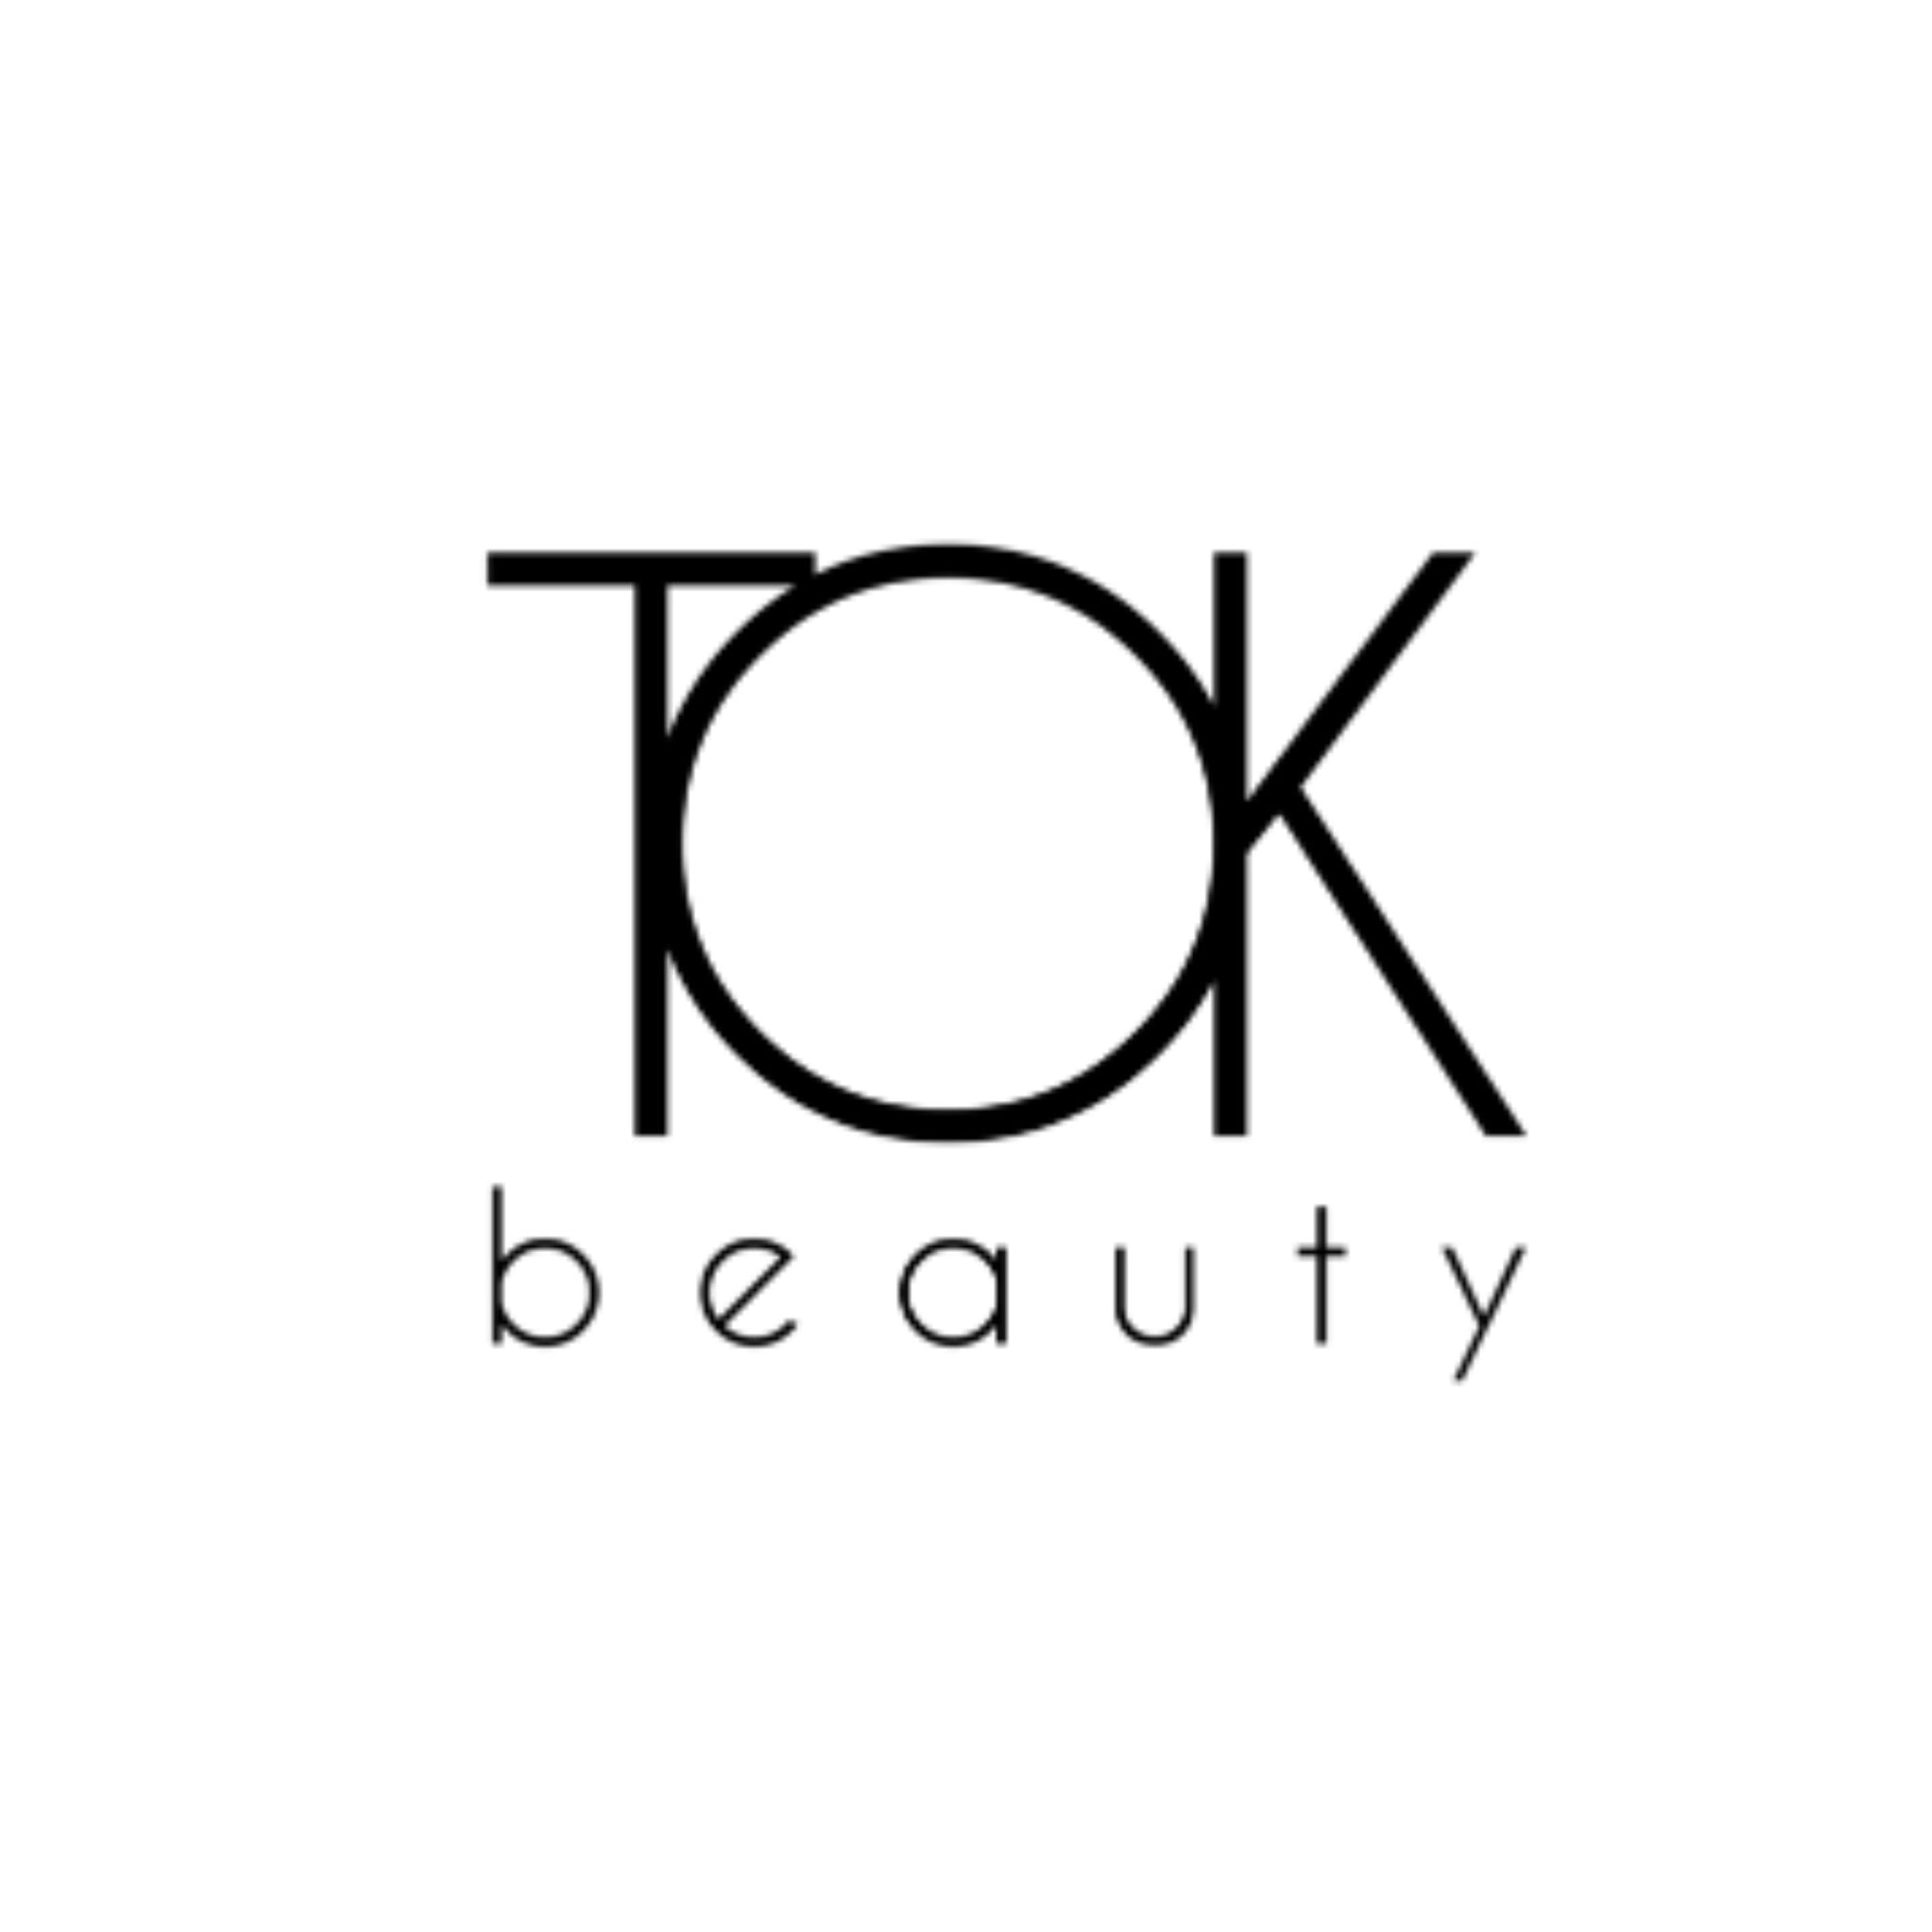 TOK Beauty - ORESTA clean beauty simplified